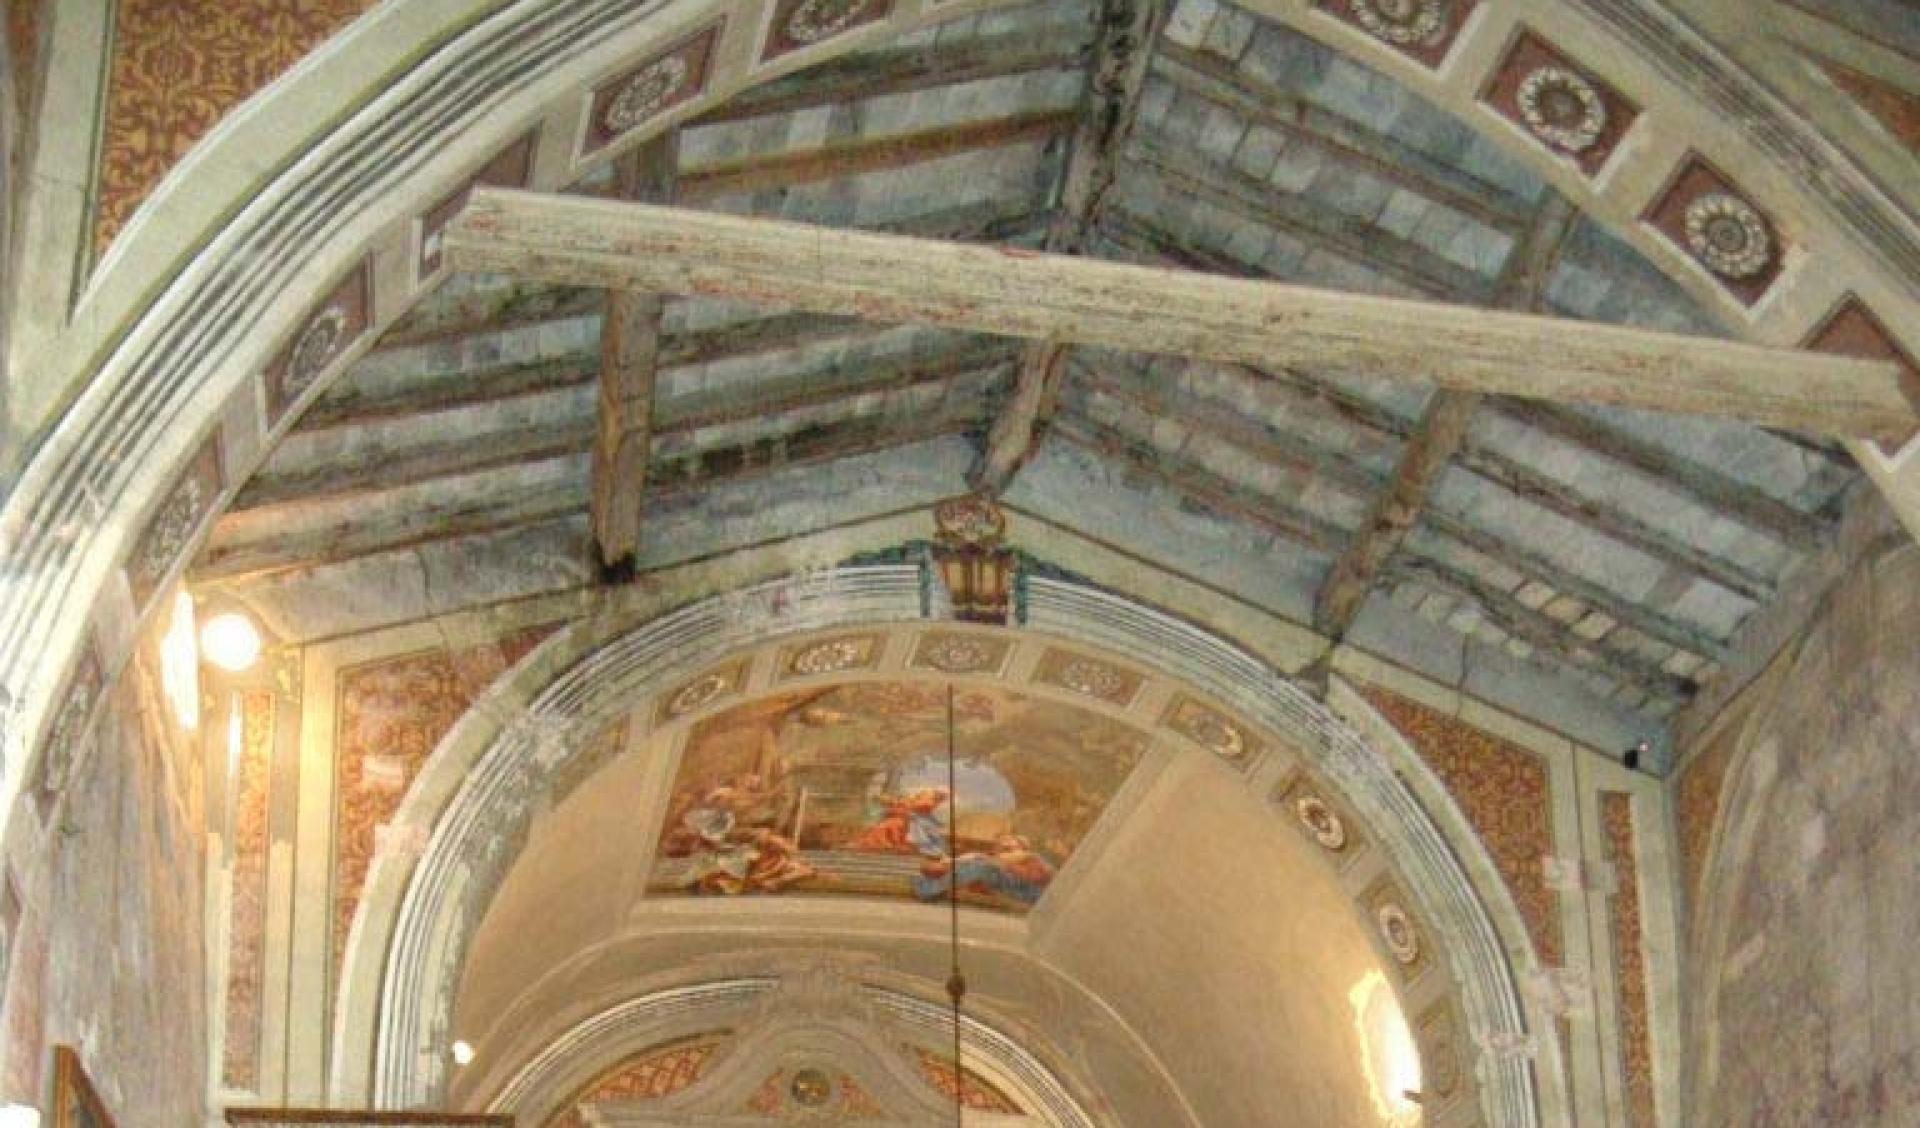 Restoration of the Sanctuary of the Madonna del Corno of Provaglio d'Iseo